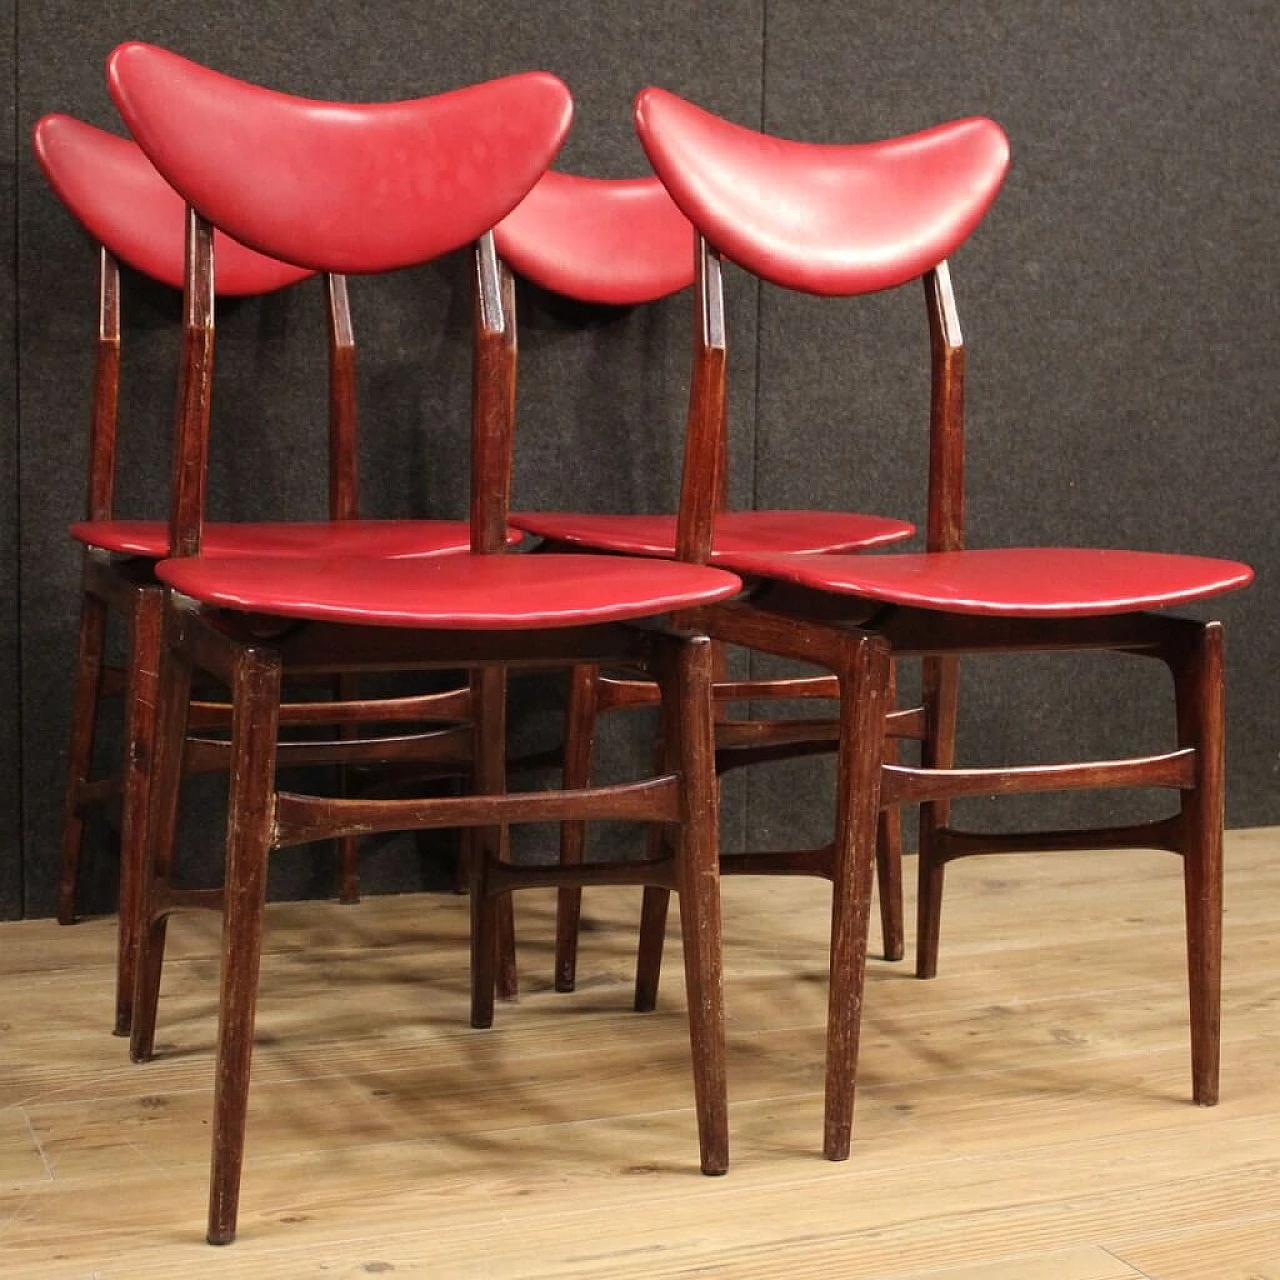 4 sedie in legno e skai rosso, anni '70 1106920